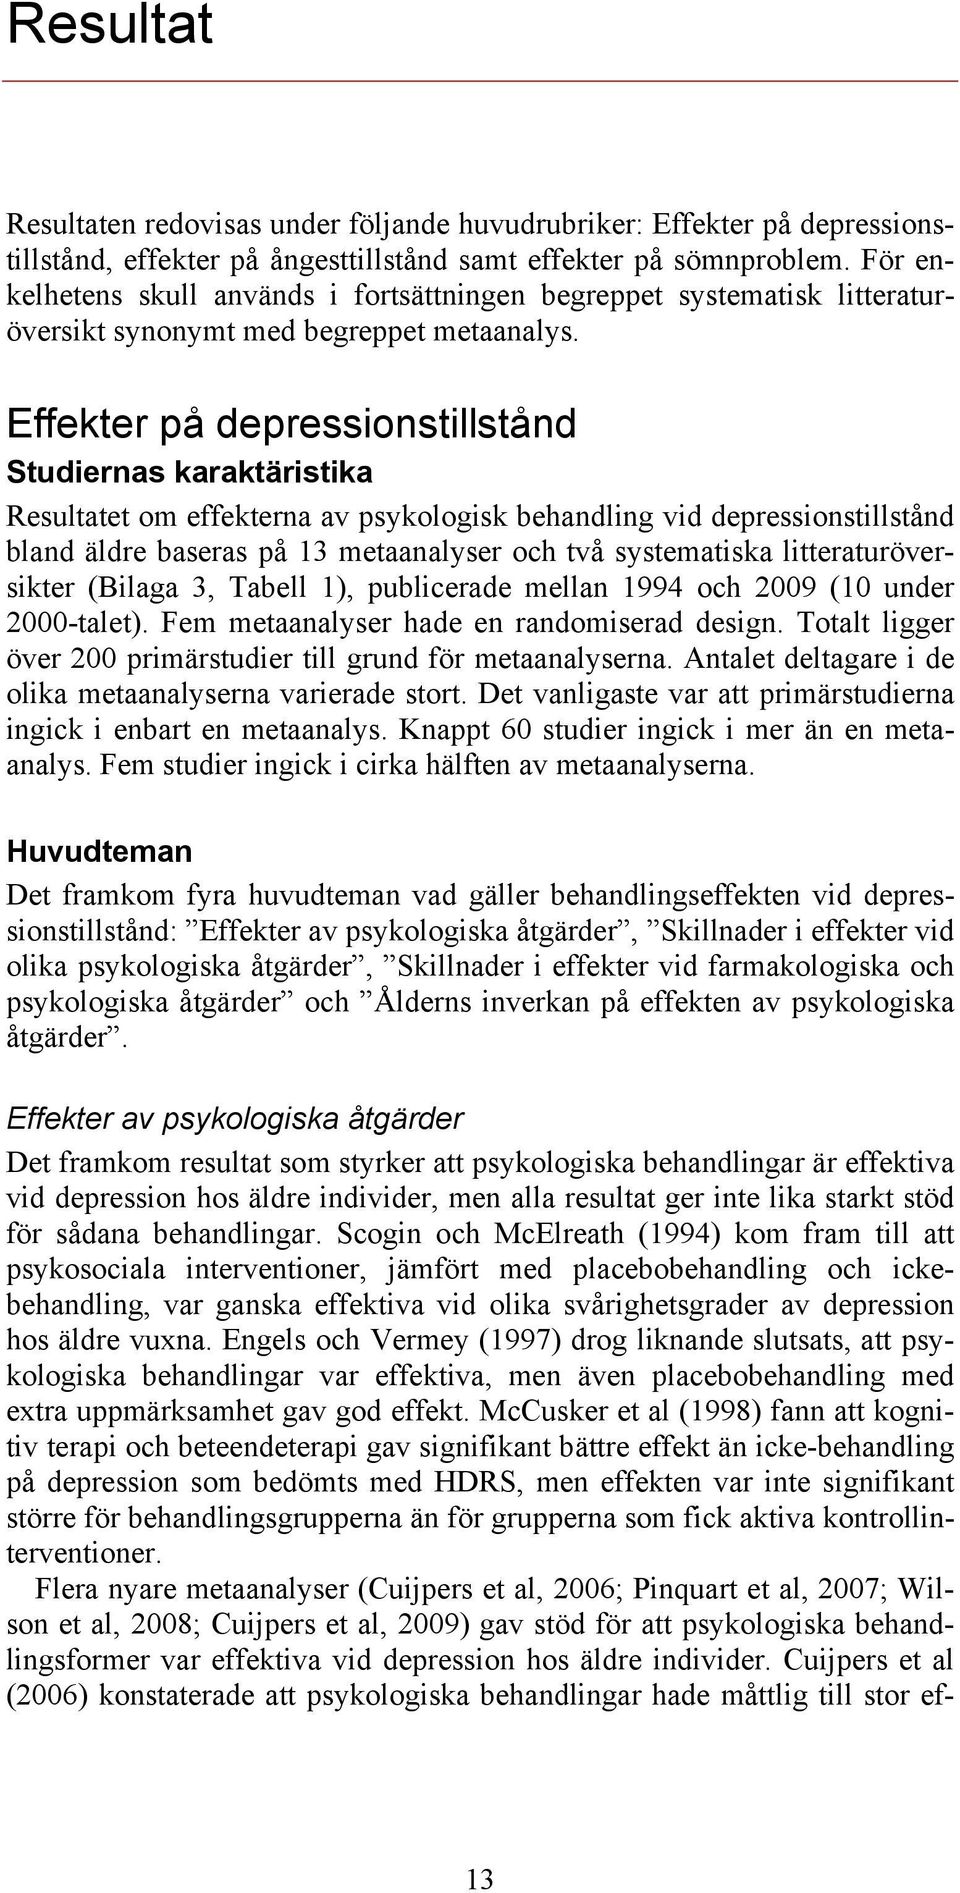 Effekter på depressionstillstånd Studiernas karaktäristika Resultatet om effekterna av psykologisk behandling vid depressionstillstånd bland äldre baseras på 13 metaanalyser och två systematiska